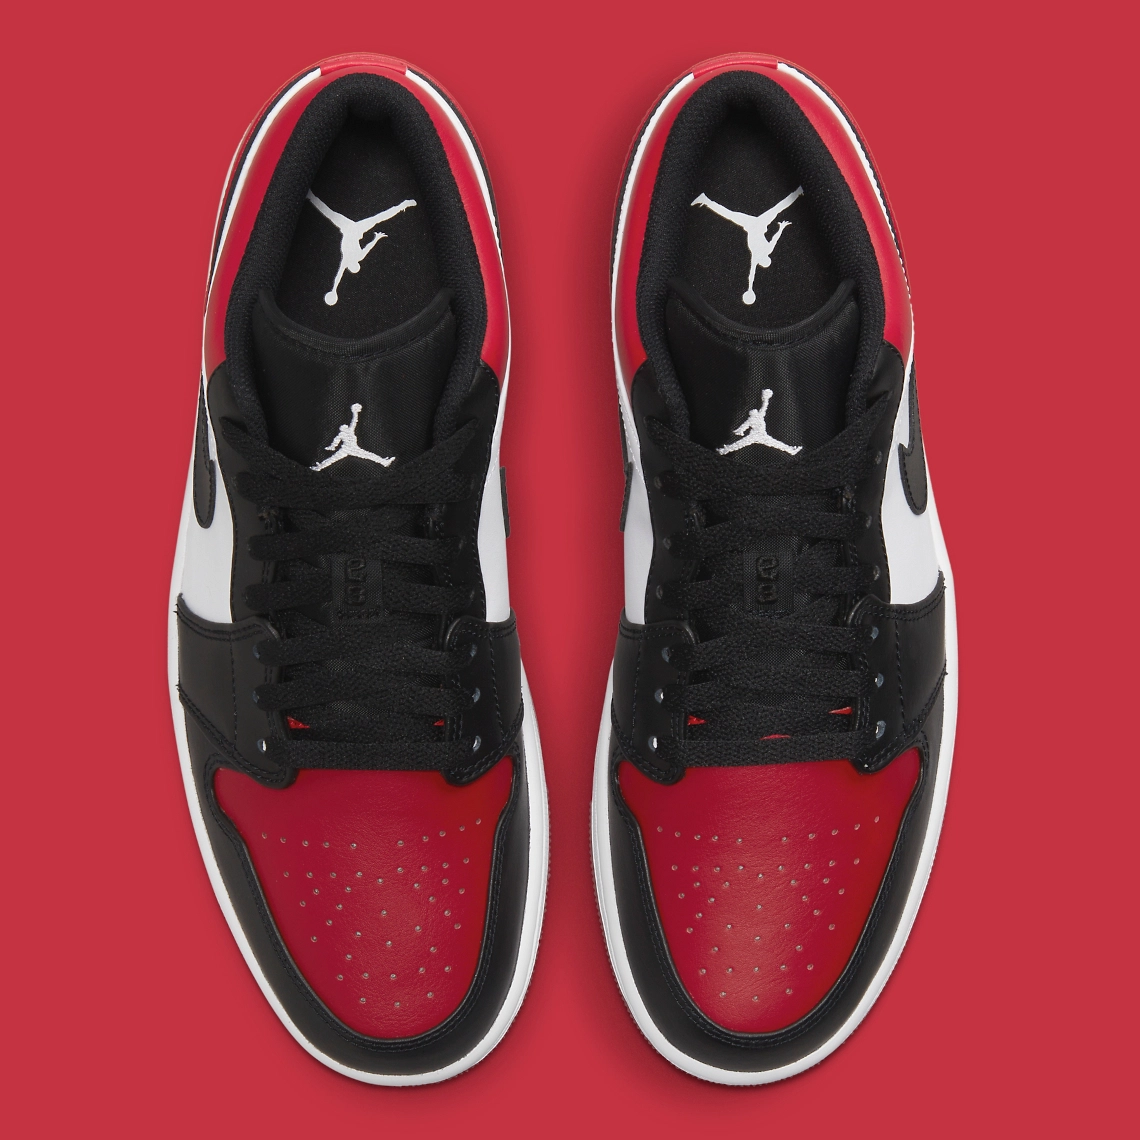 Imágenes oficiales de las Air Jordan 1 Low “Bred Toe”, Zapas News